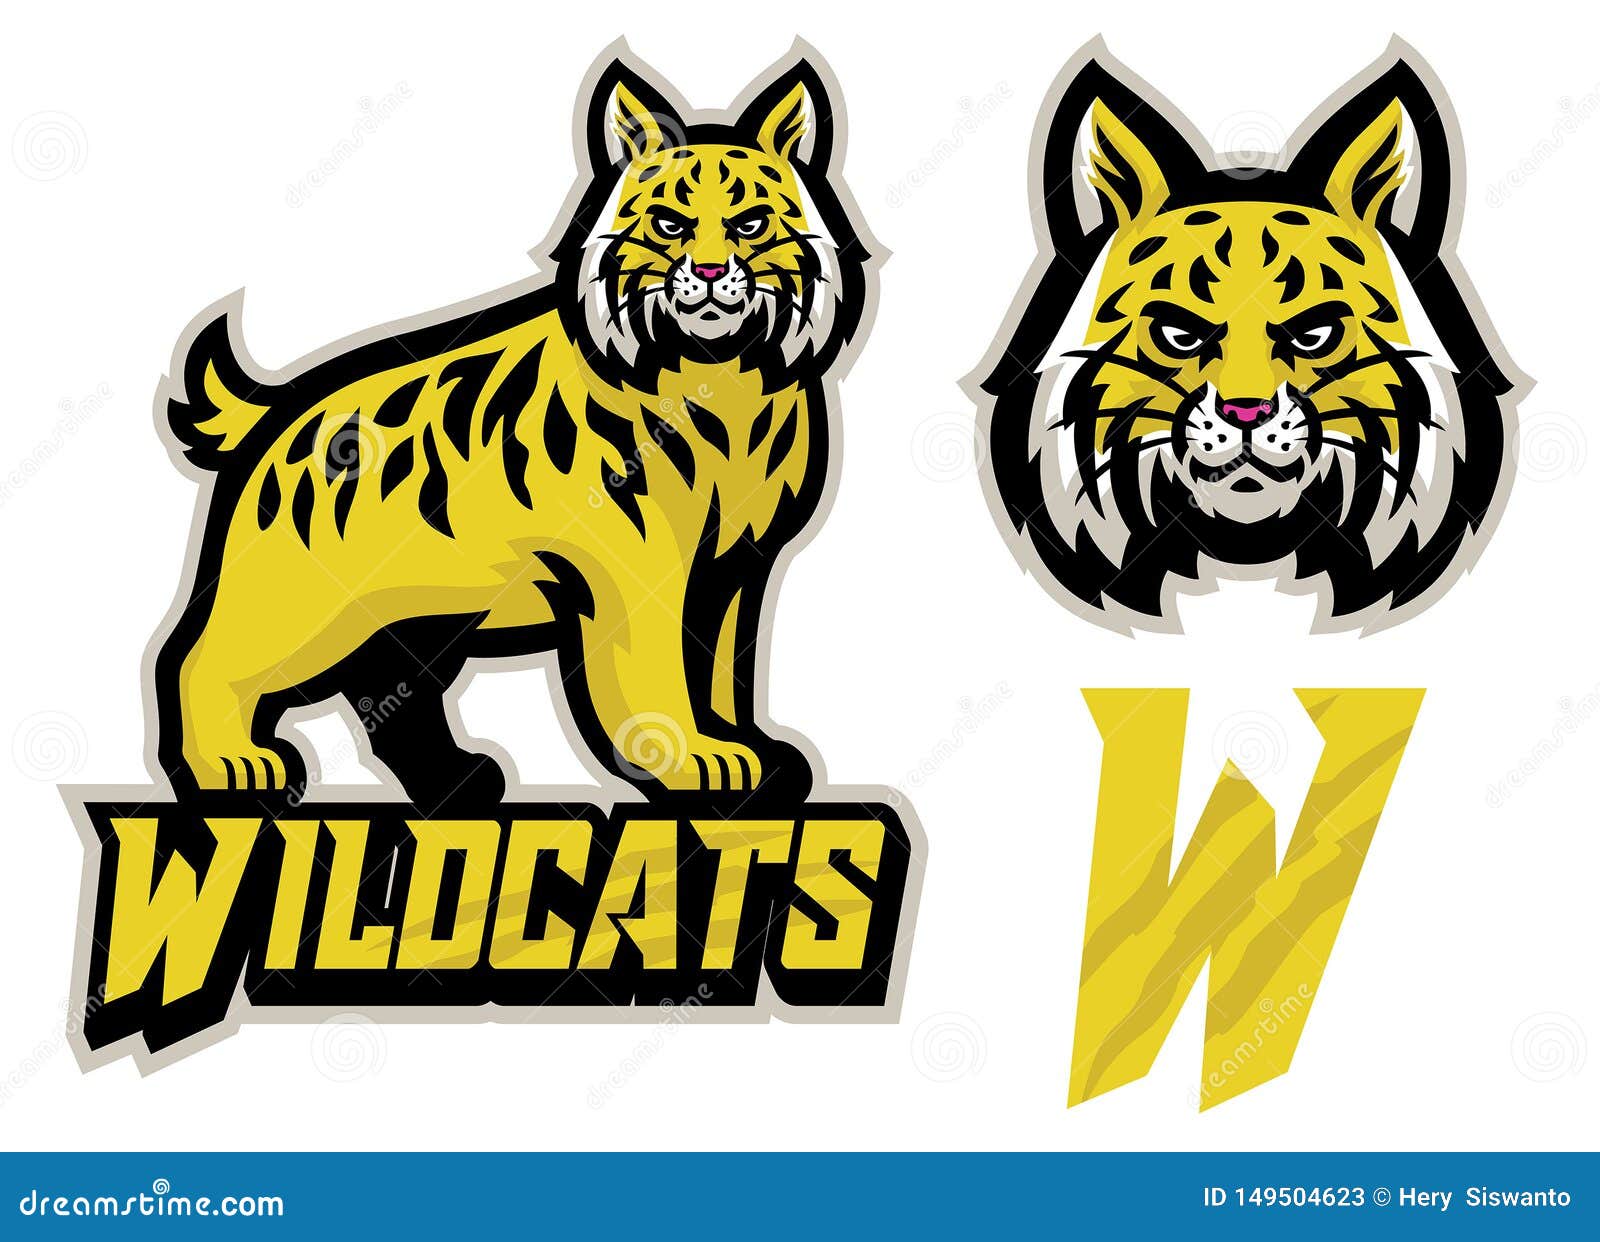 set of wildcat mascot